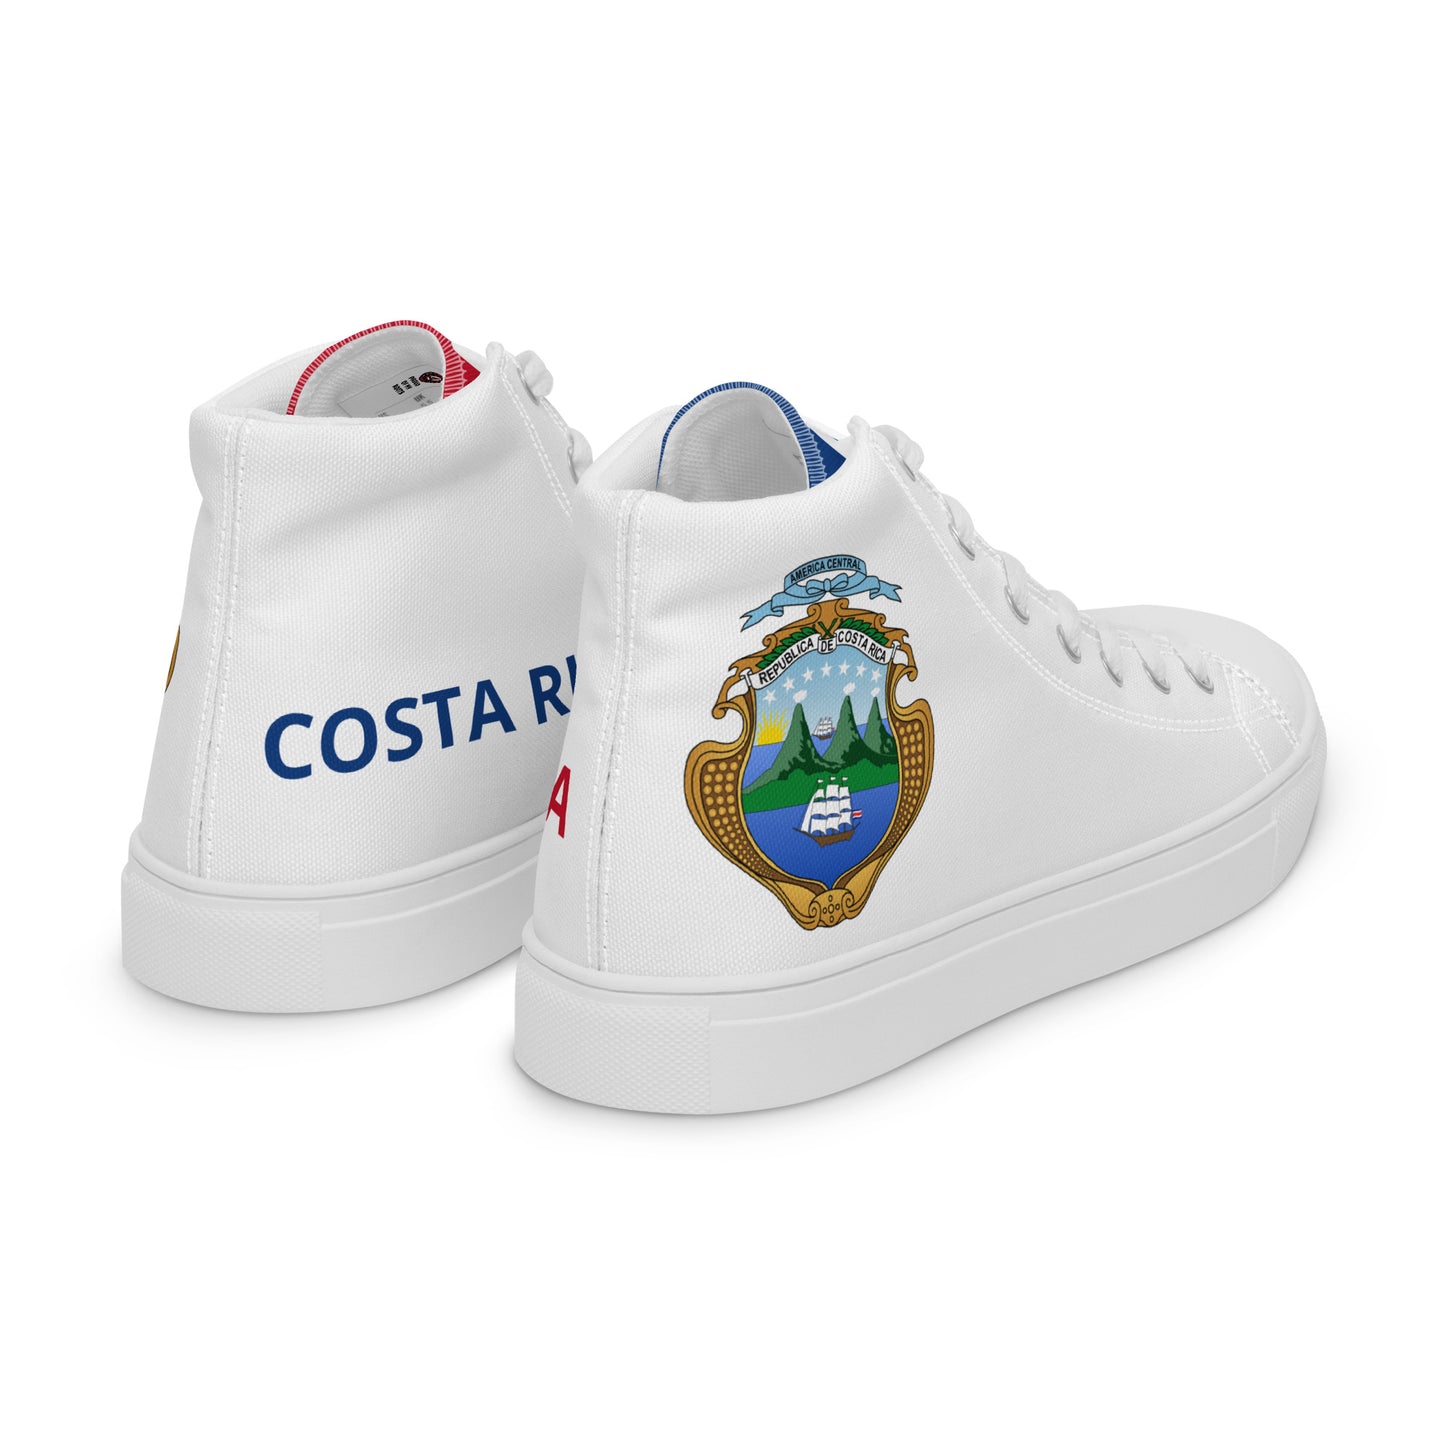 Costa Rica - Hombres - Blanco - Zapatos High top